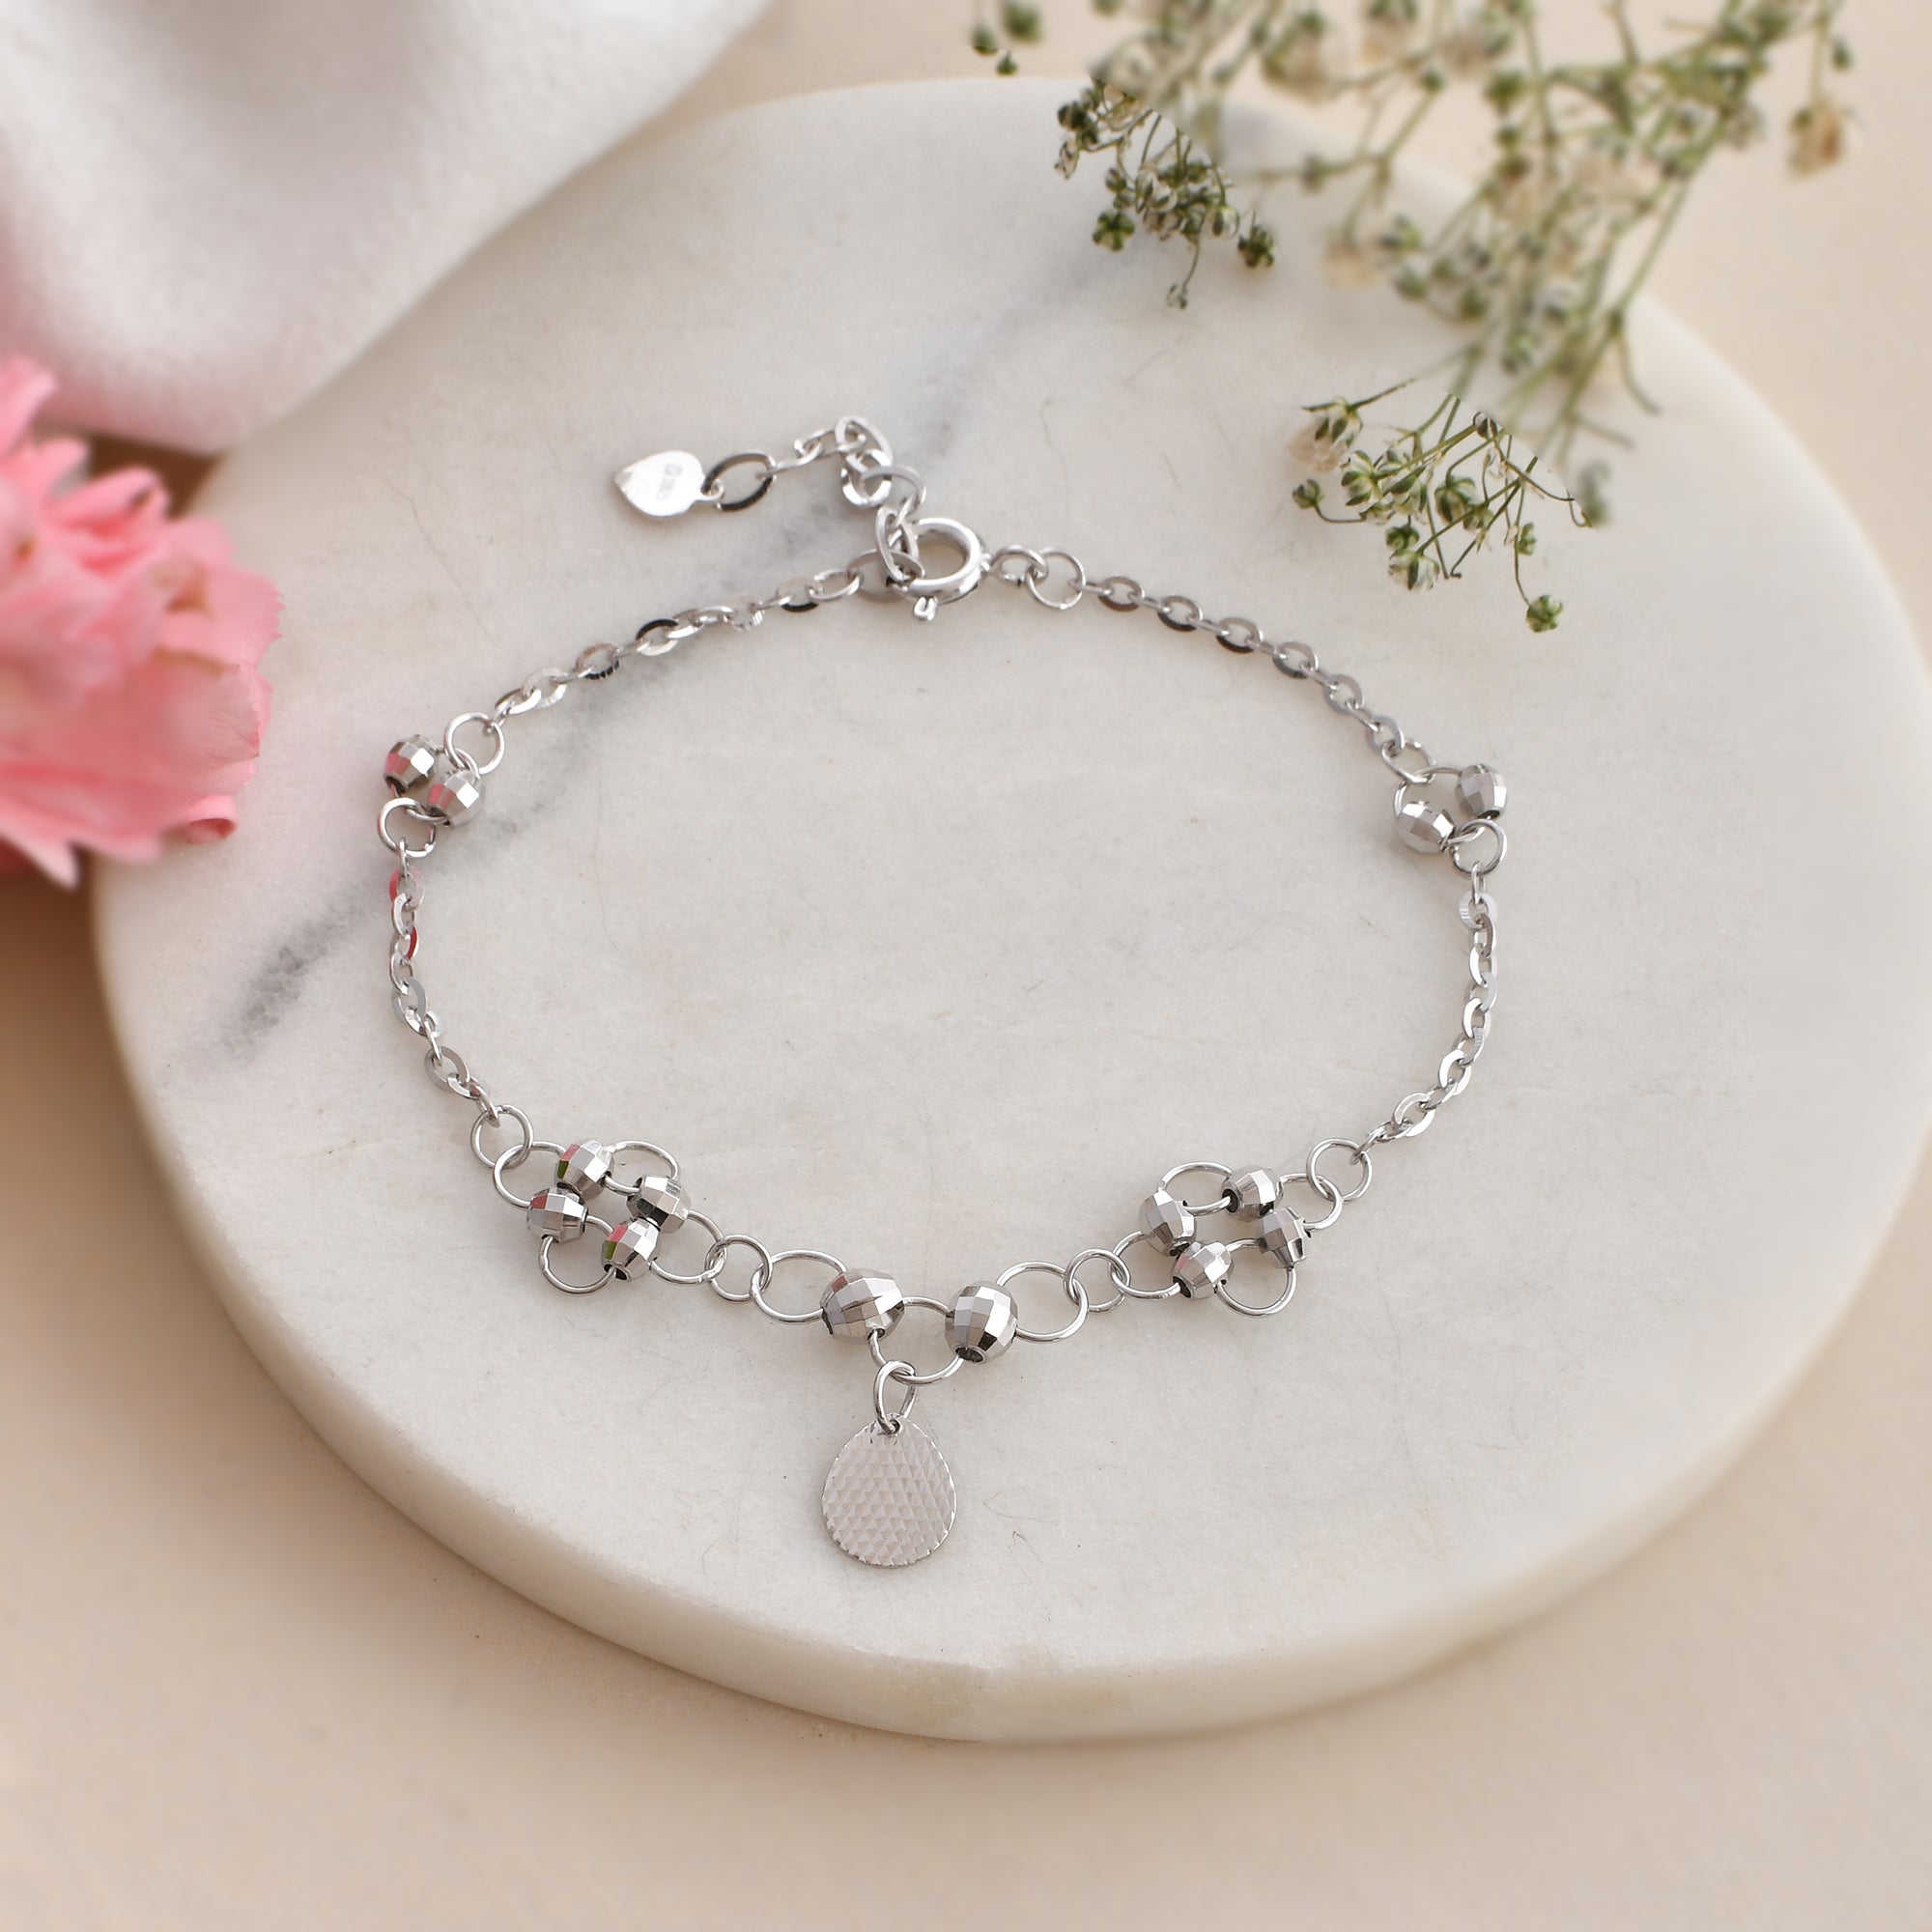 Lady Heart Elegant Solid Silver Adjustable Bracelet